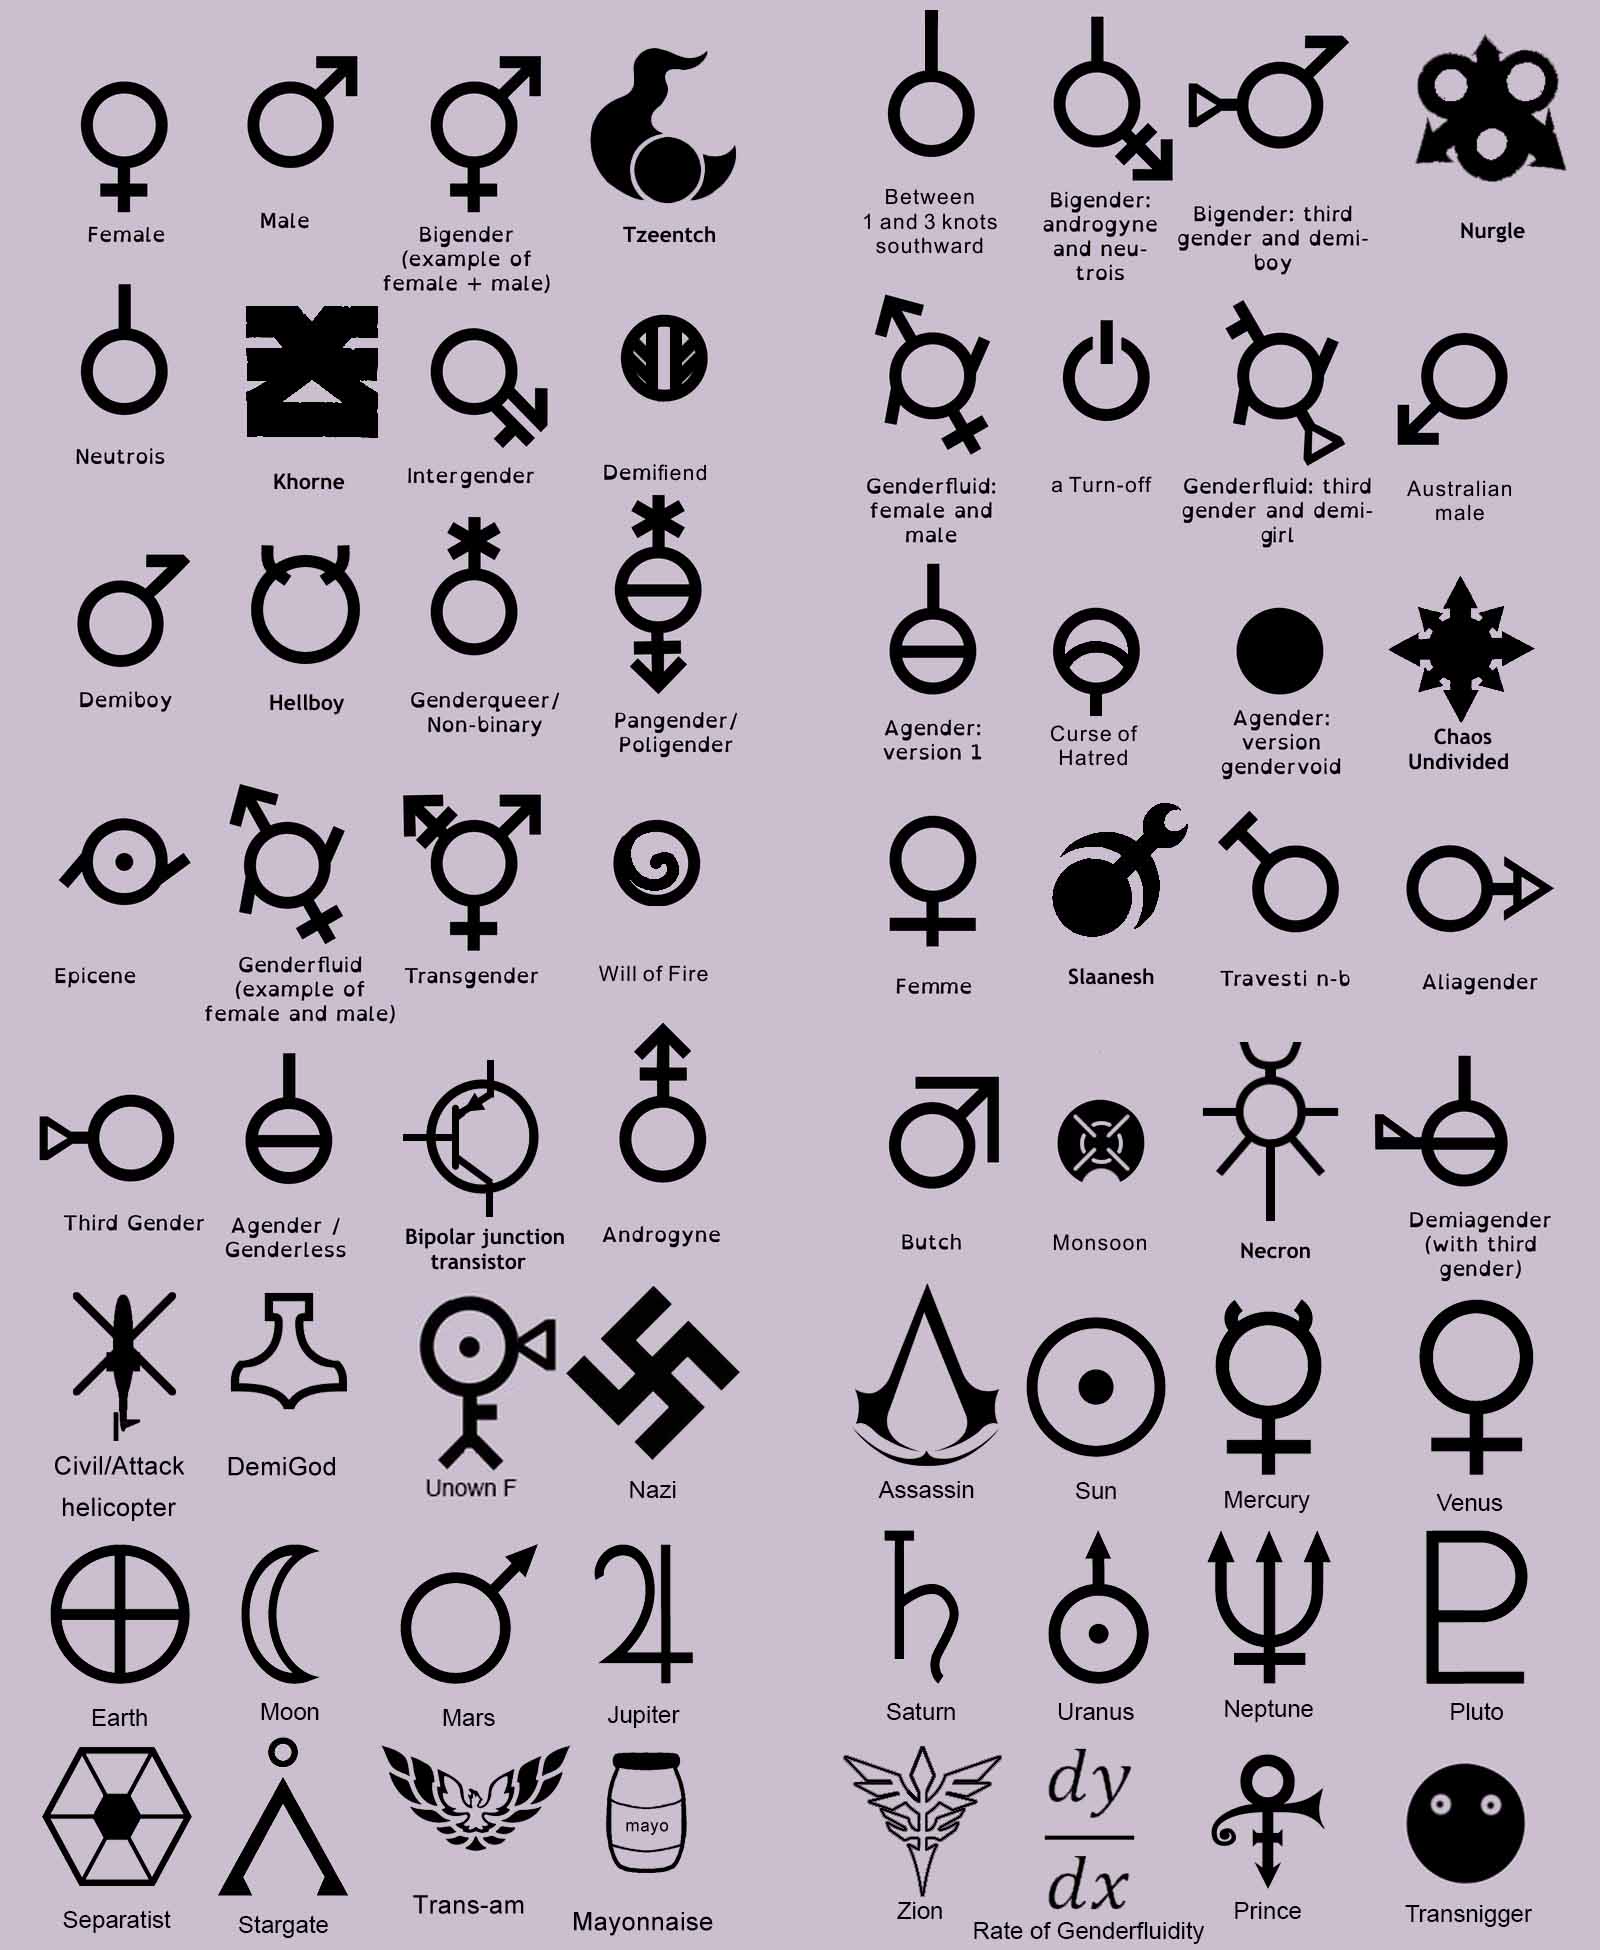 72 genders